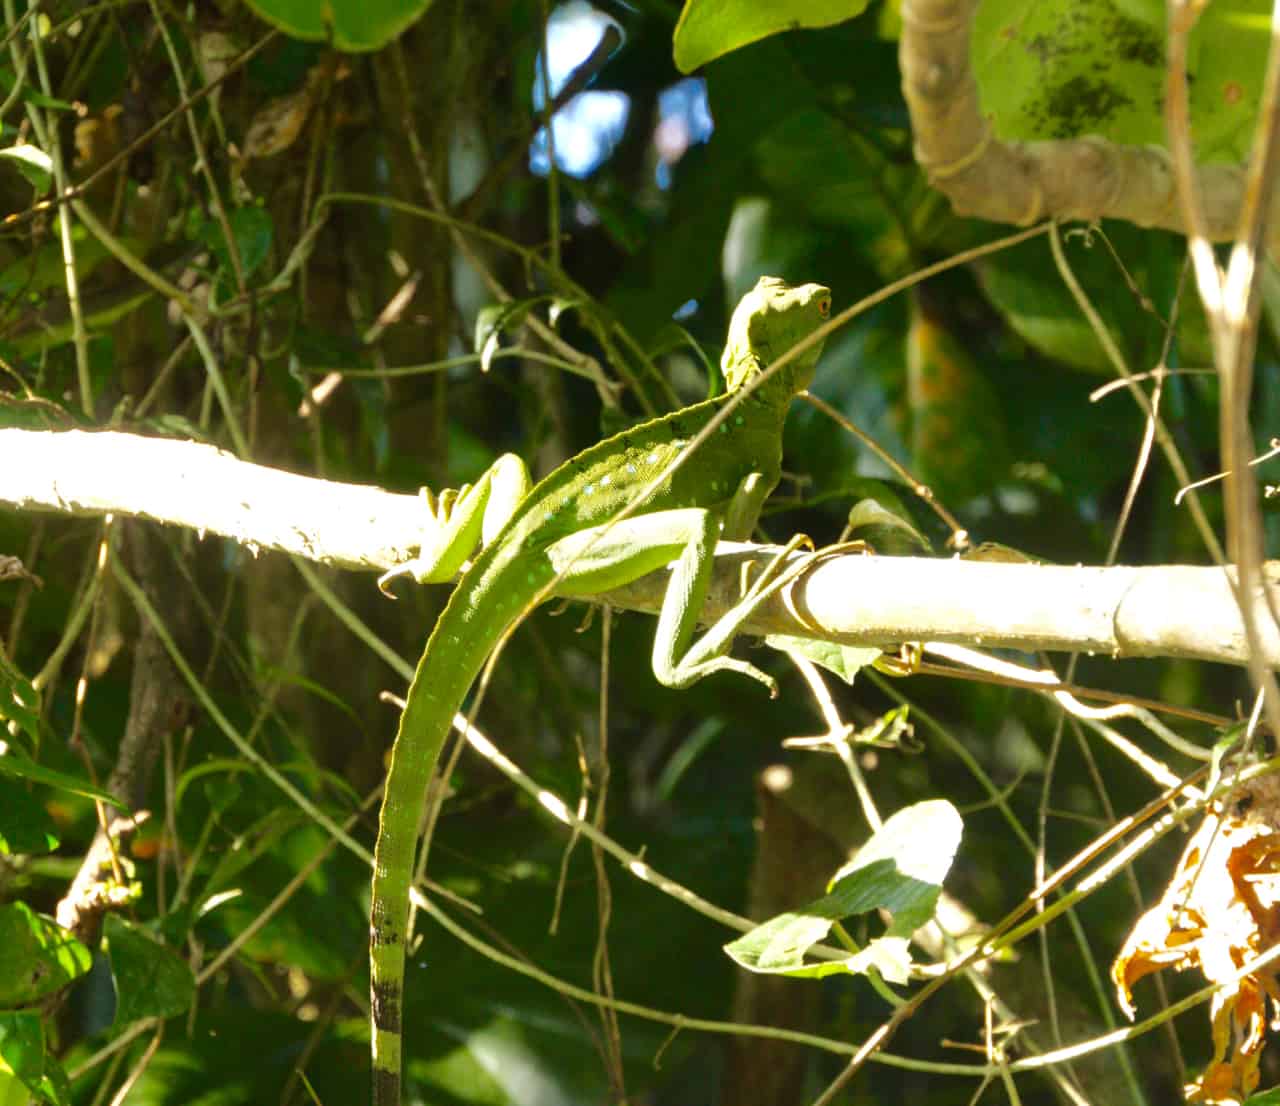 samice zeleného baziliška spočívá na větvi v Tortugueru, jednom z nejvíce biologicky rozmanitých parků v Kostarice.